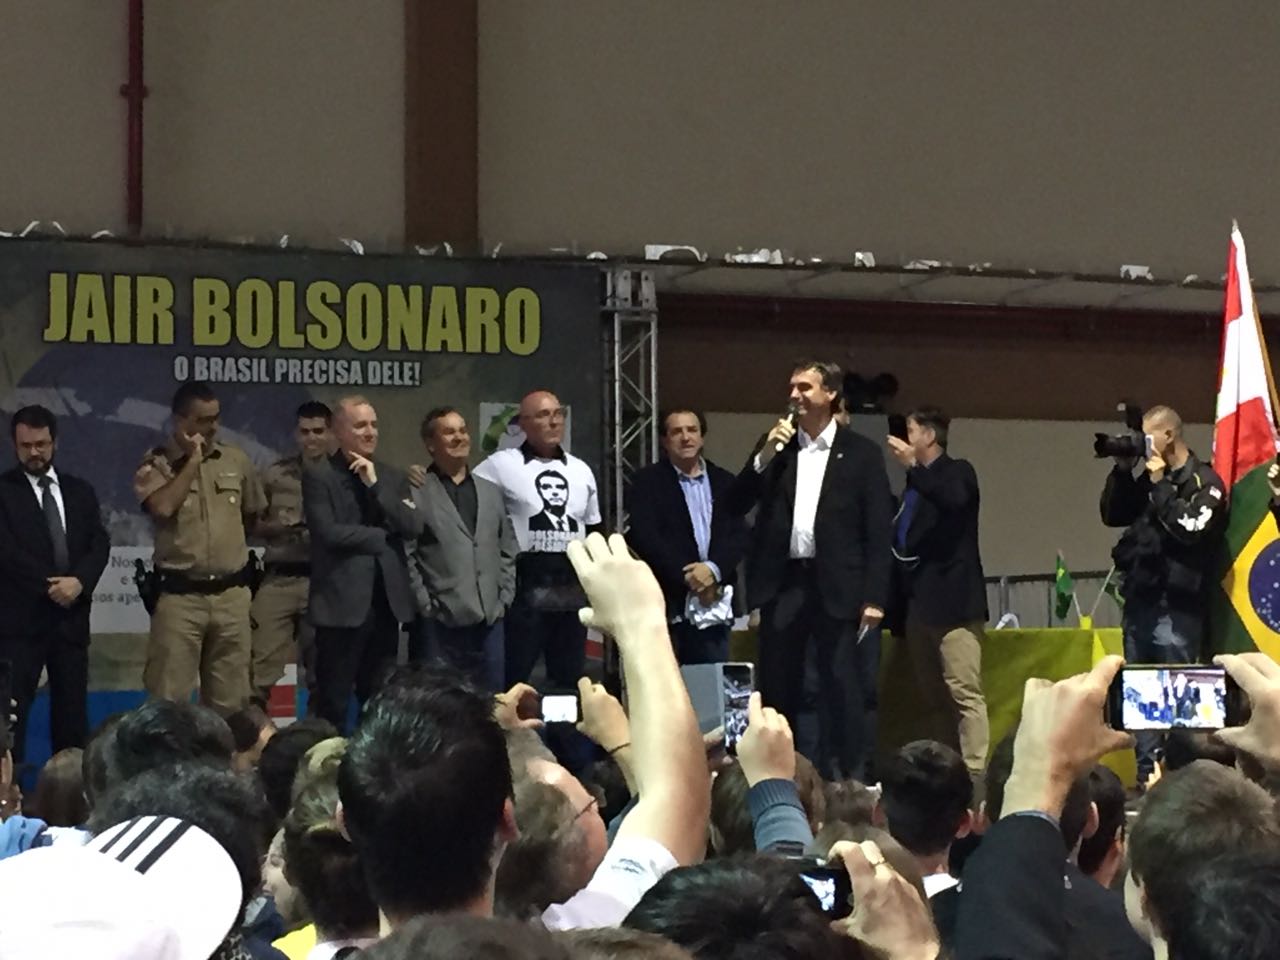 Bóca Cunha divide palanque com deputado federal Jair Bolsonaro ... - O Munícipio (Blogue)